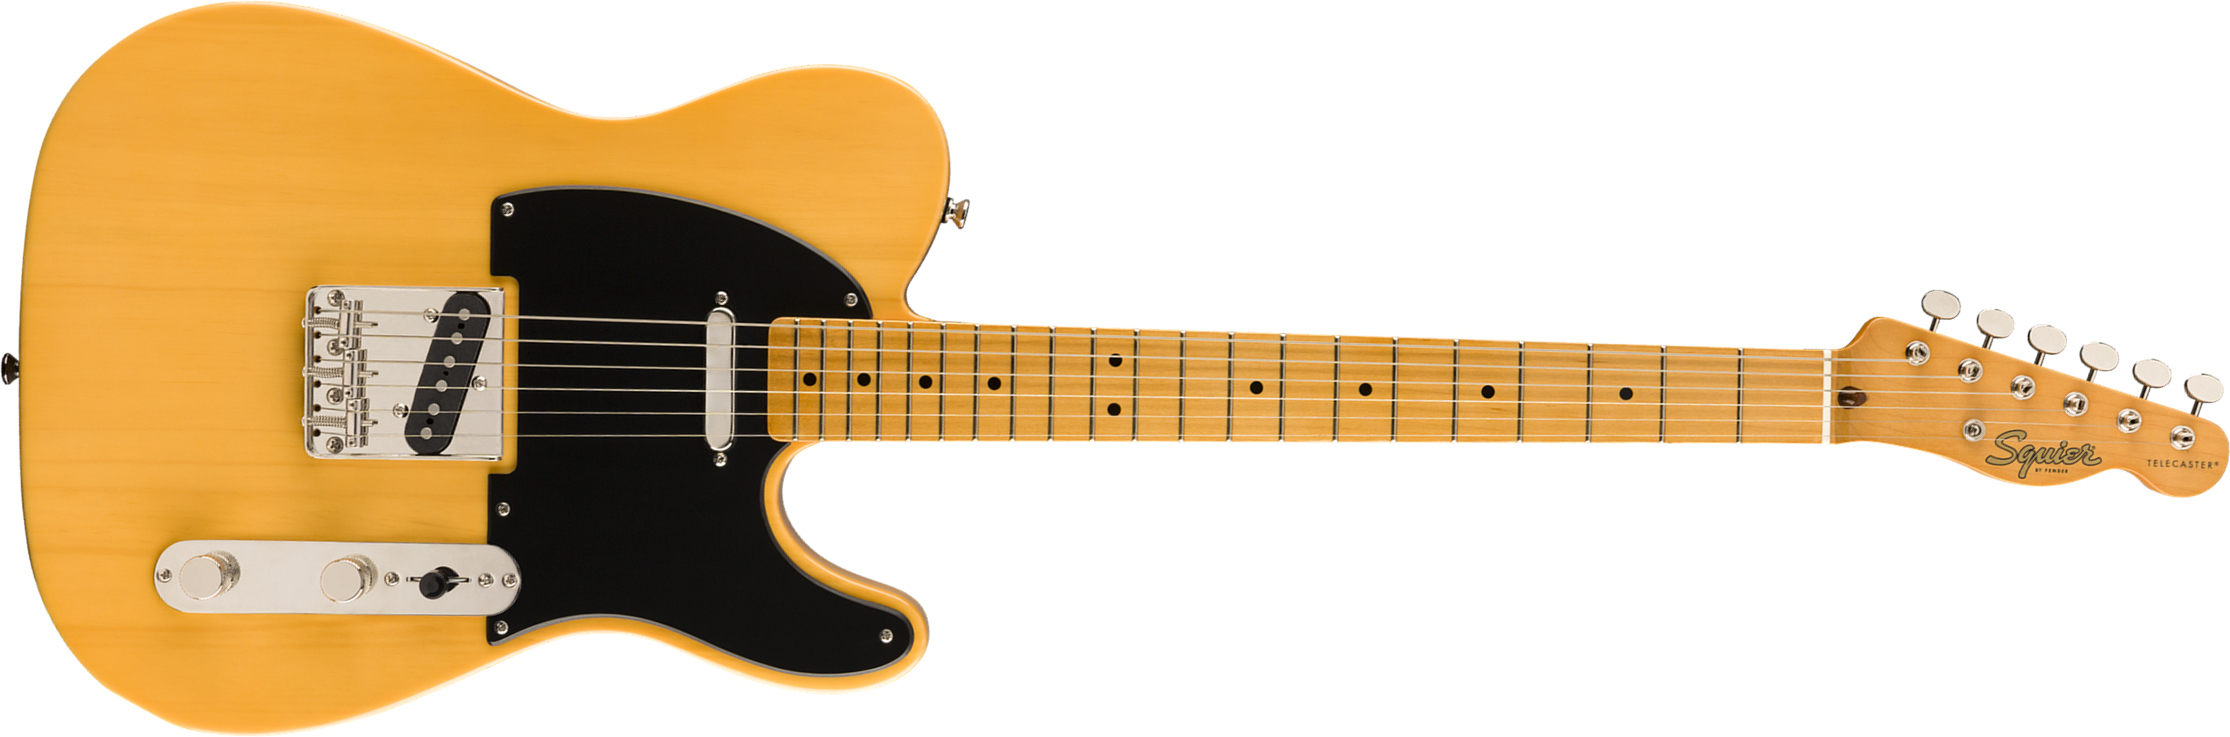 Squier Tele '50s Classic Vibe 2019 Mn - Butterscotch Blonde - Guitarra eléctrica con forma de tel - Main picture